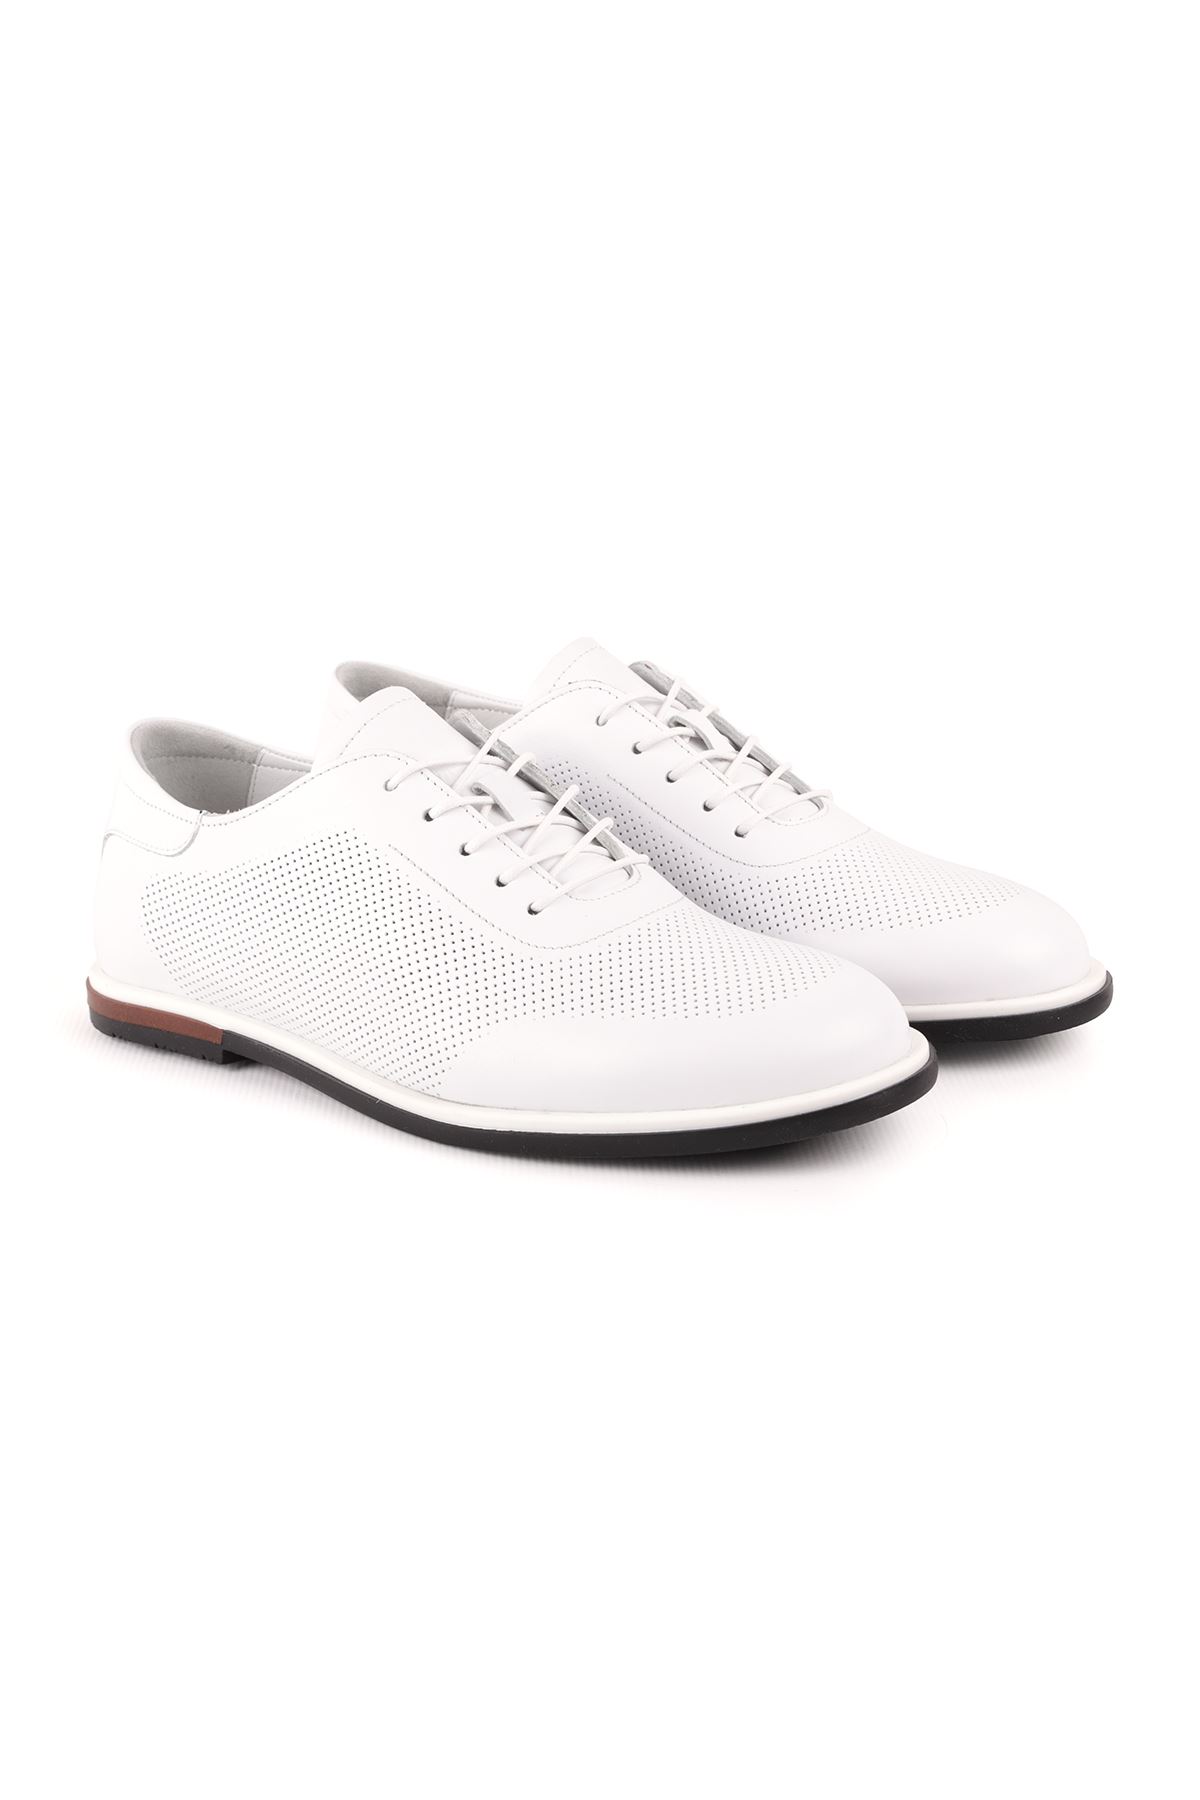 Libero L4848 Beyaz Erkek Spor Ayakkabı 